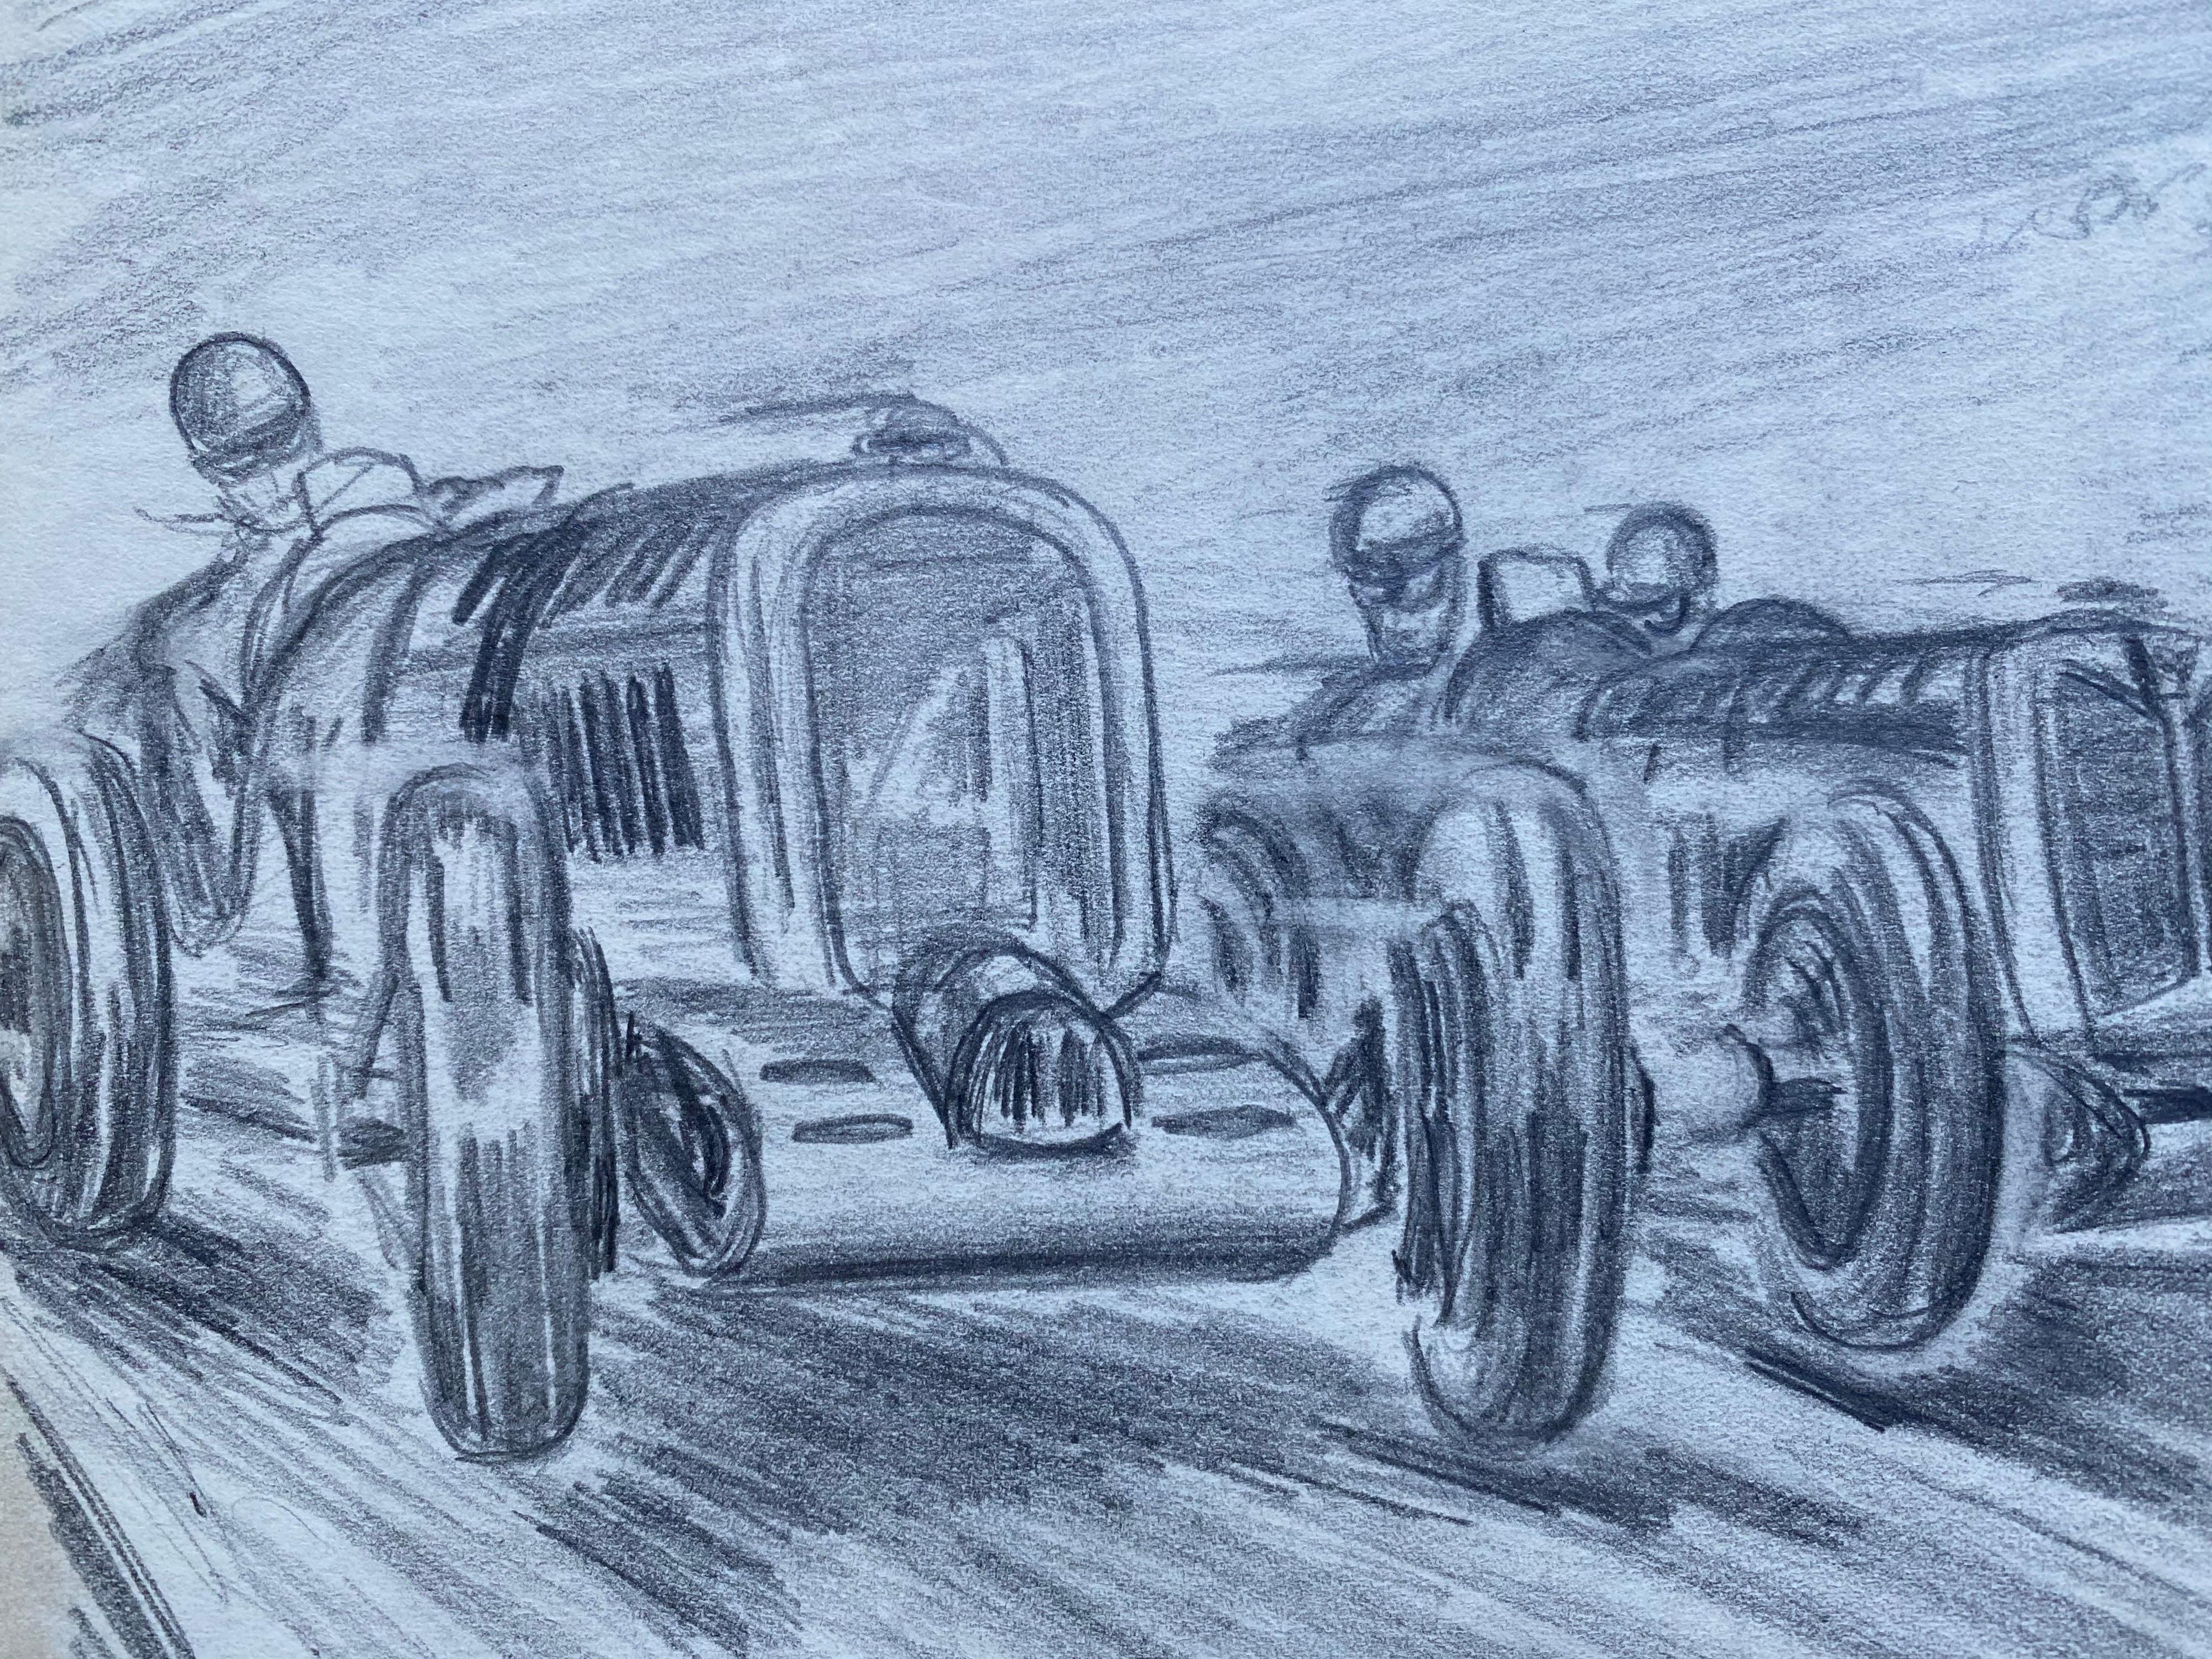 Merveilleux dessin original au crayon représentant une scène de course de voitures automobiles vintage des années 1930. 

Le dessin est réalisé par « K. B. White », un illustrateur et artiste automobile britannique qui travaillait dans les années